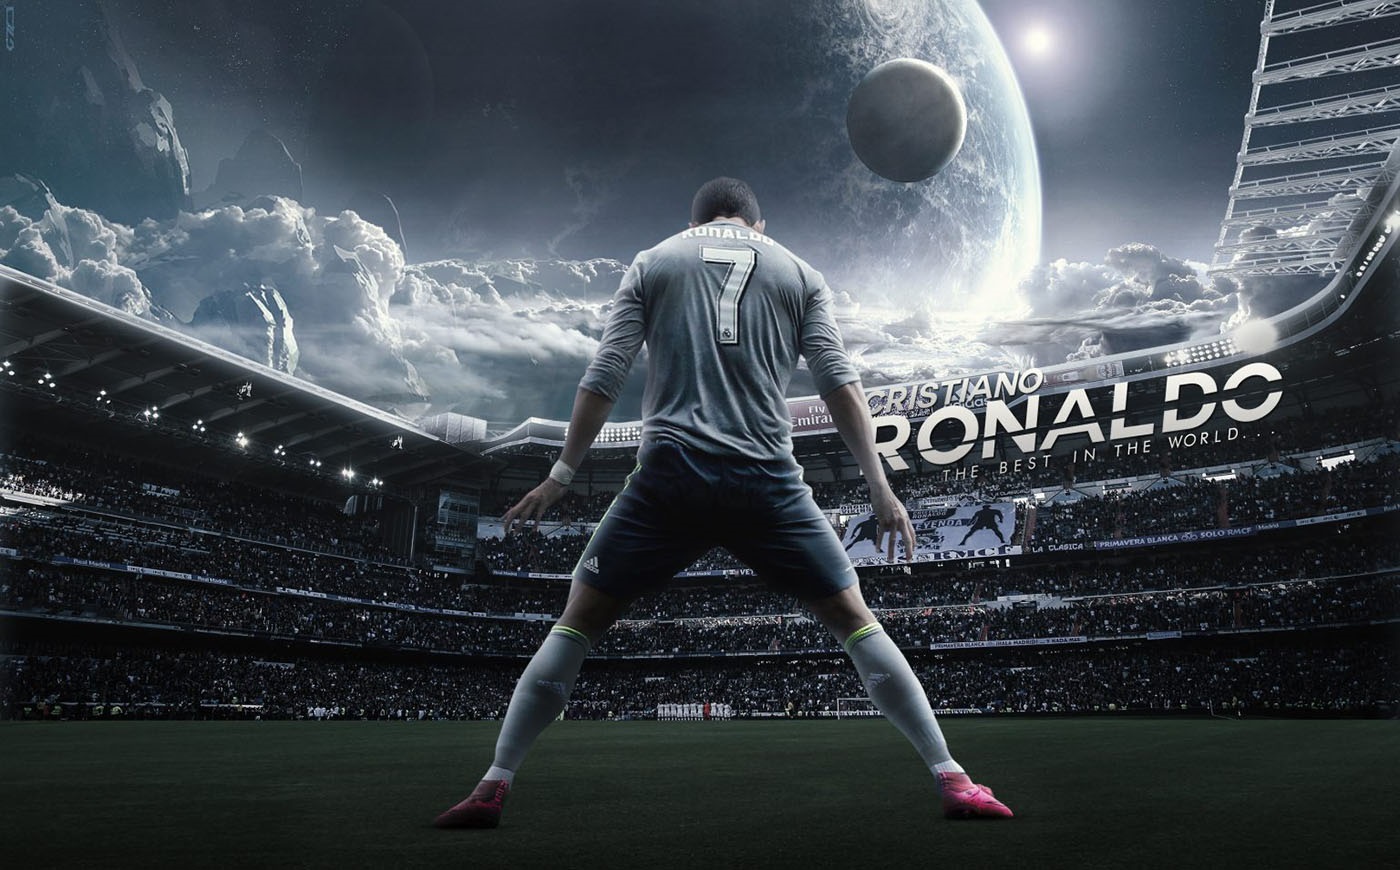 Tiểu sử Cristiano Ronaldo - Cỗ máy săn bàn huyền thoại làng túc cầu 2